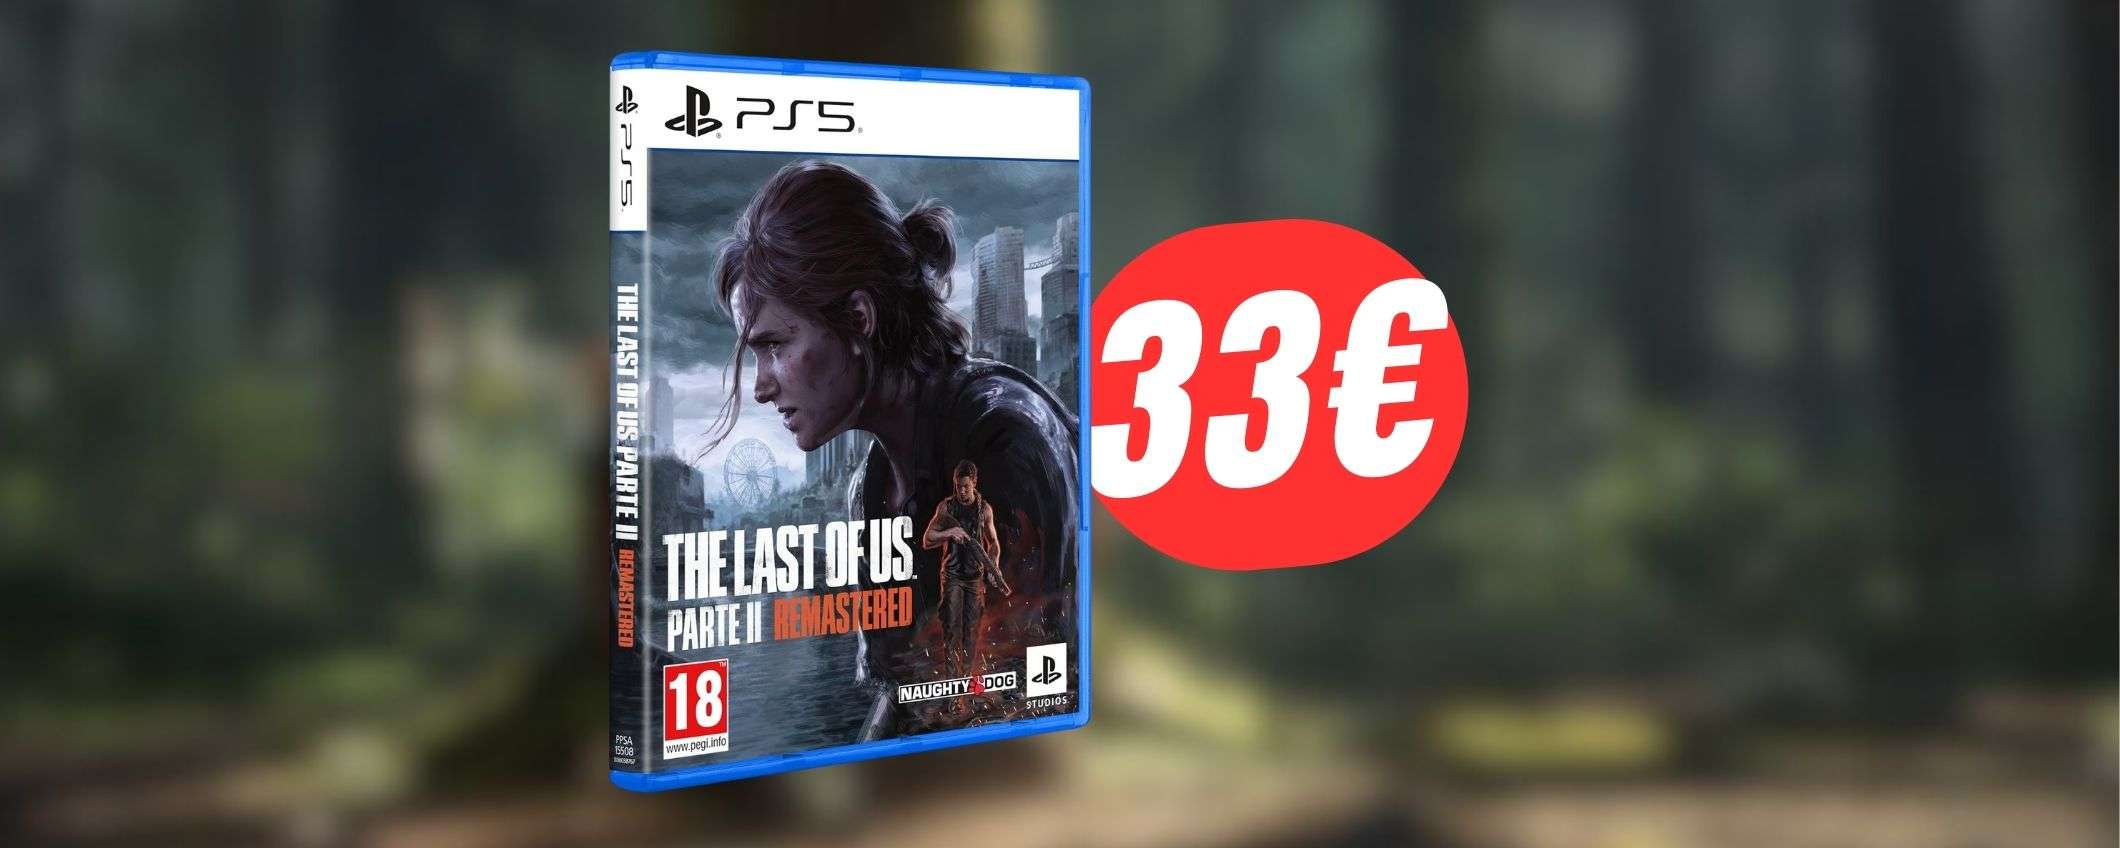 The Last of Us Parte II Remastered a soli 33€: uno dei titoli migliori di sempre a un prezzo BOMBA!